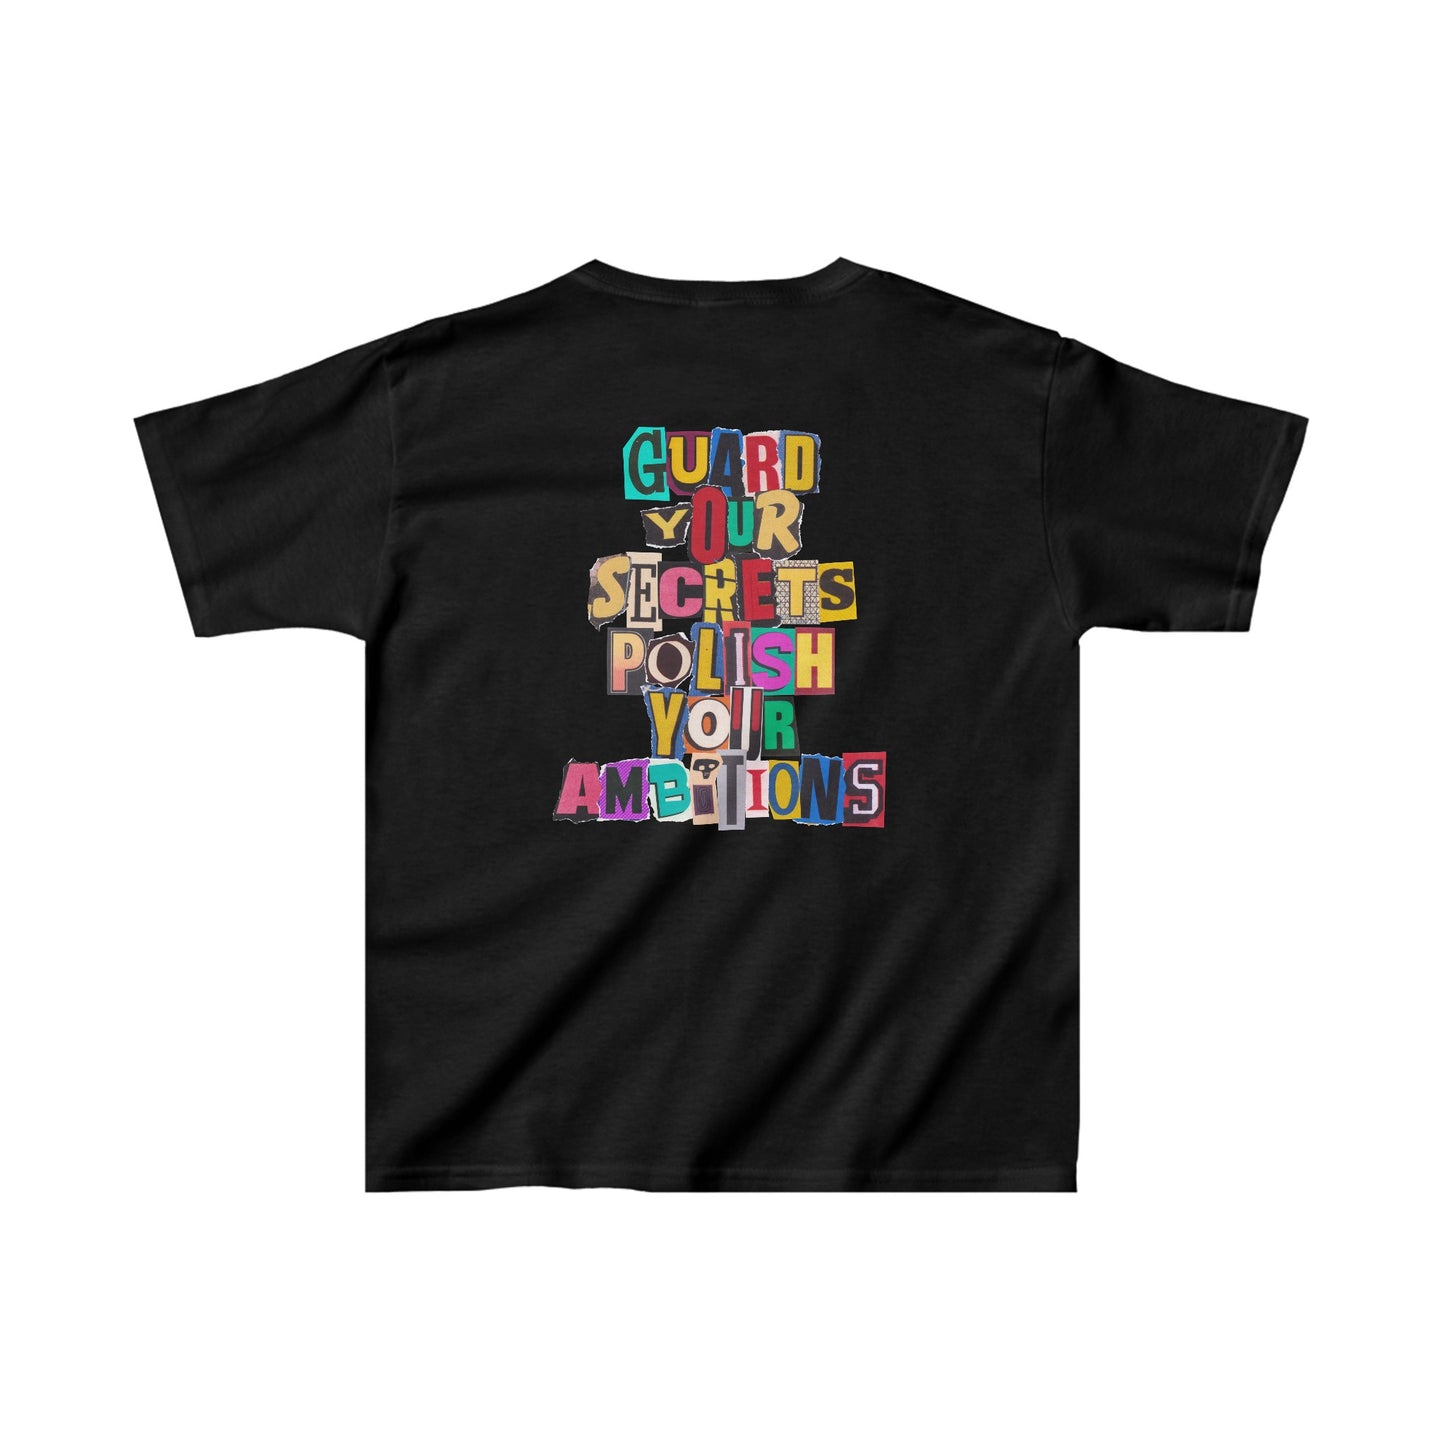 Youth WIY x B. Ingram Vintage T-Shirt